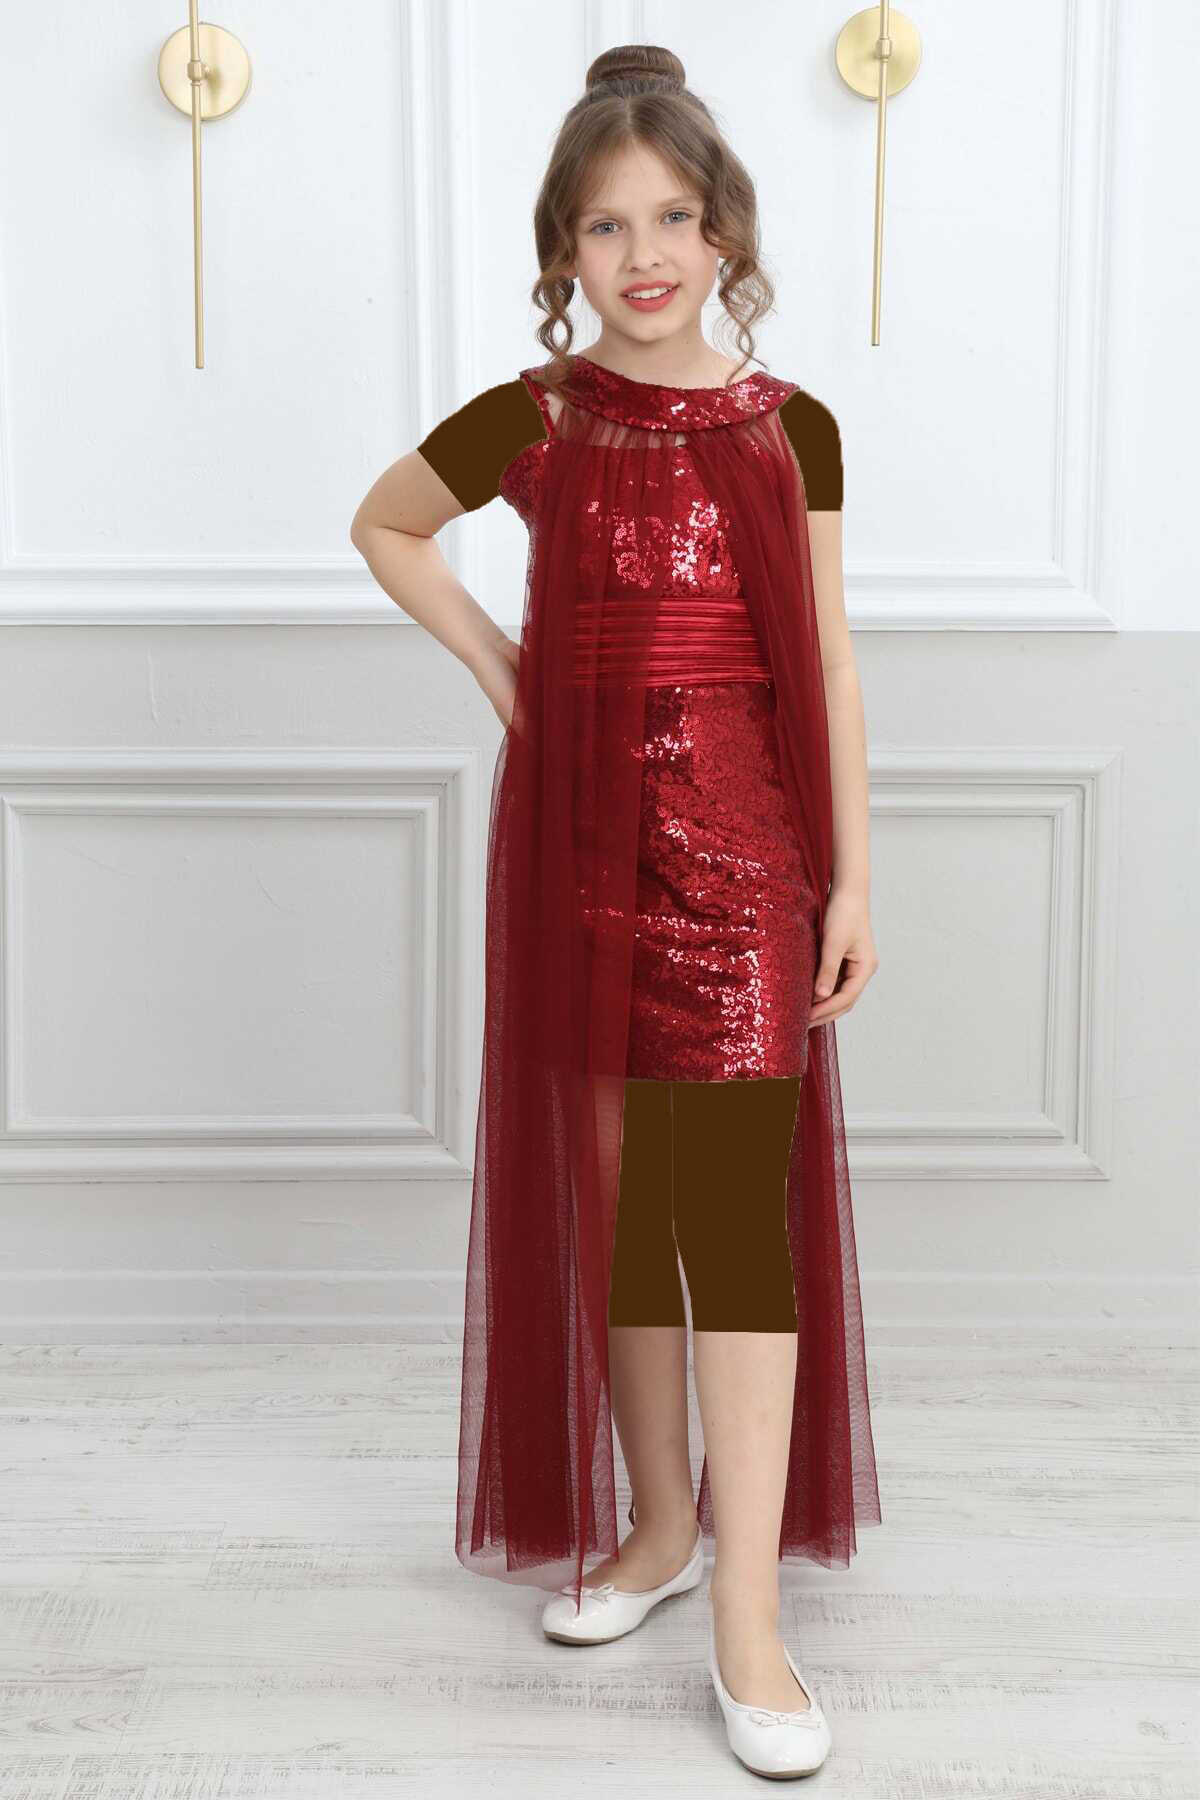 لباس شب بندی کوتاه پولکی شنل توری جداگانه بچه گانه دخترانه قرمز برند Asortik Kids